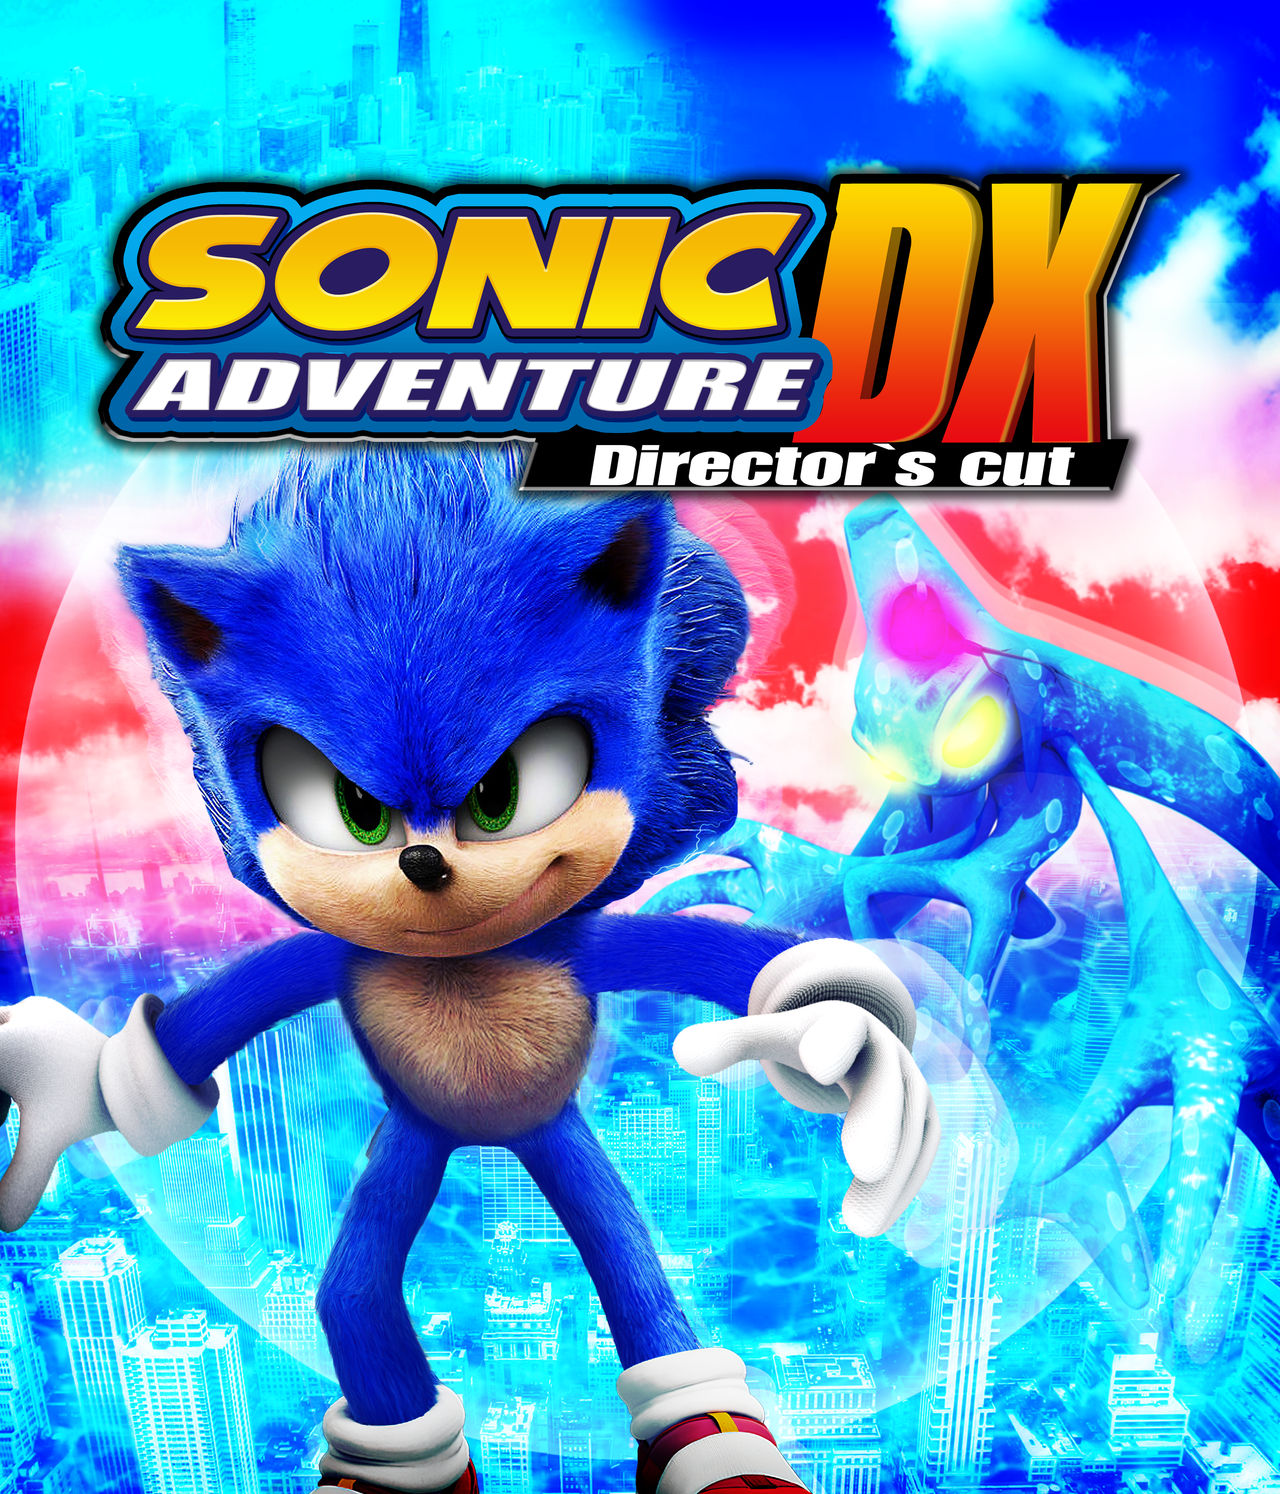 Sonic Adventure Dx Movie edit by DanielVieiraBr2020 on DeviantArt